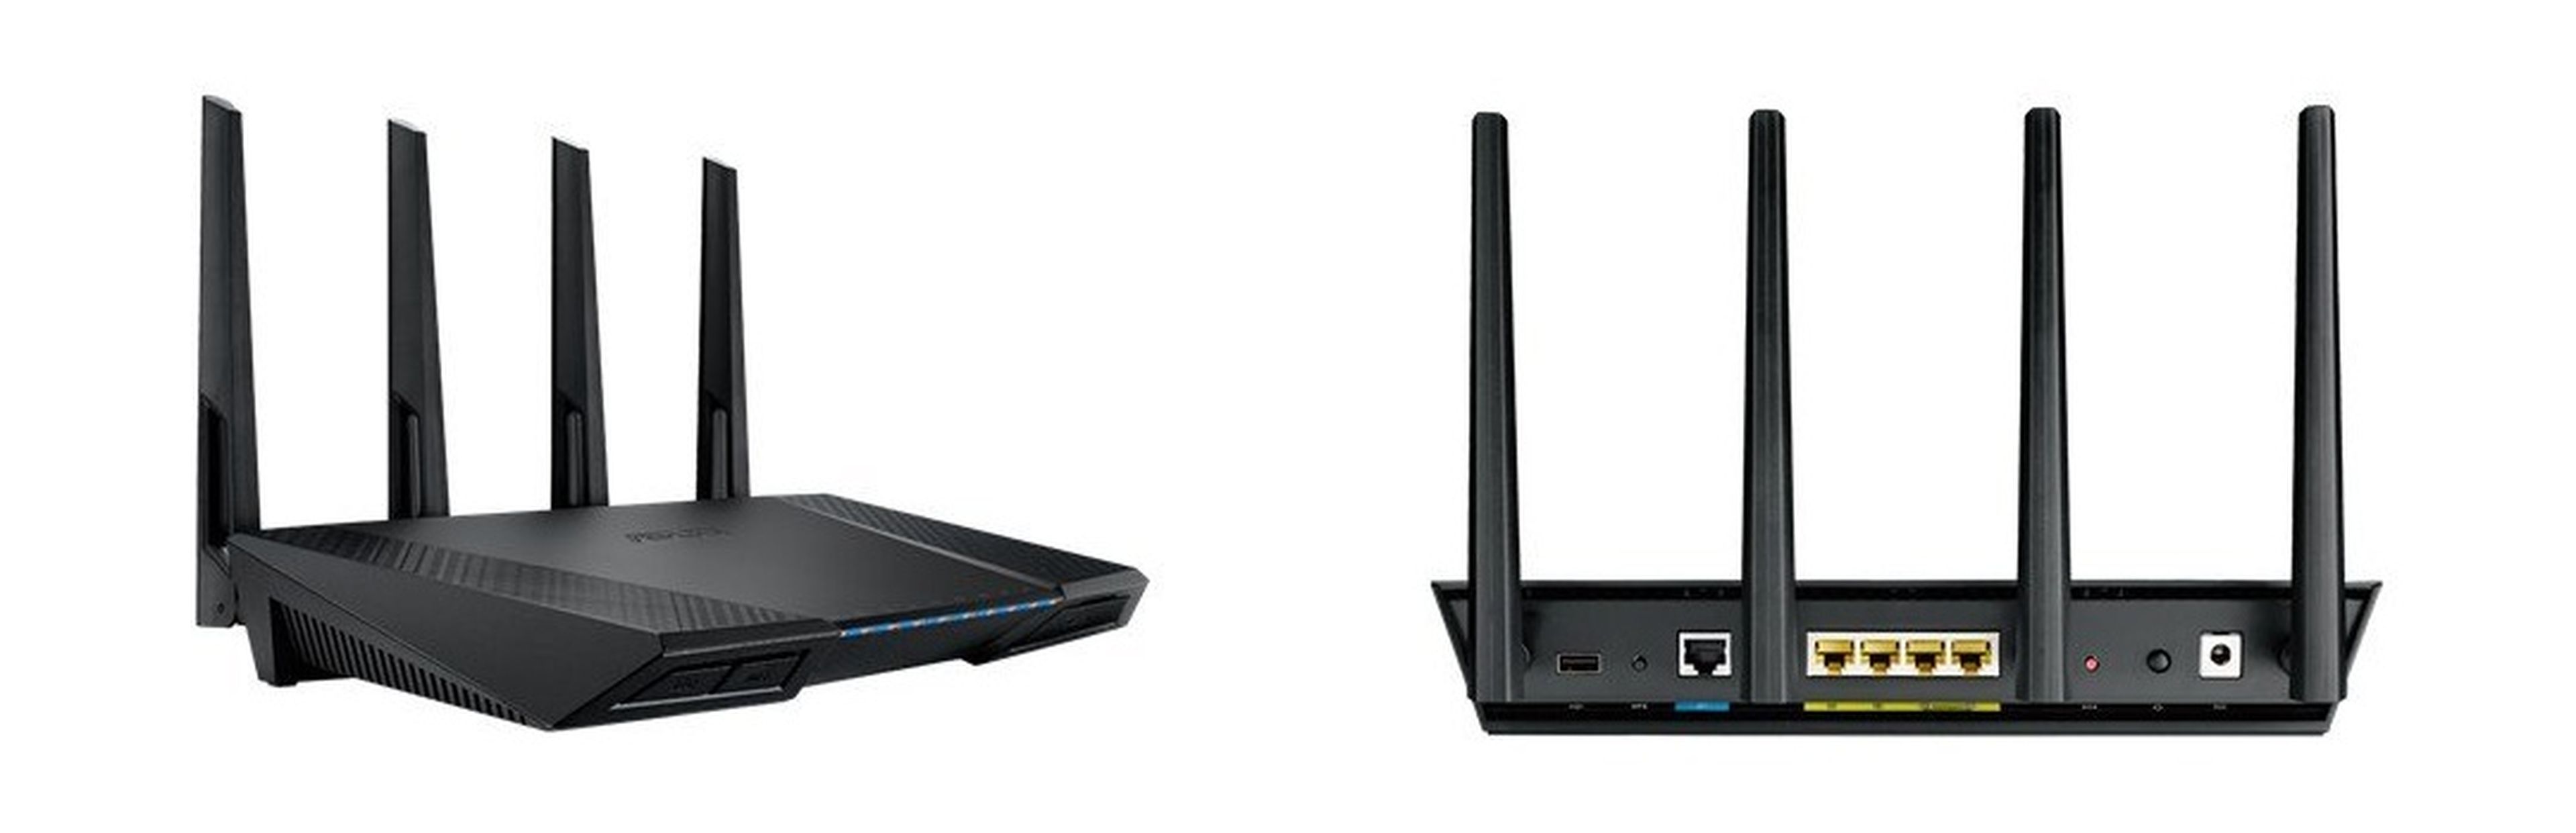 ASUS RT-AC58U vs ASUS RT-AC87U, ¿qué diferencias hay entre estos dos routers?